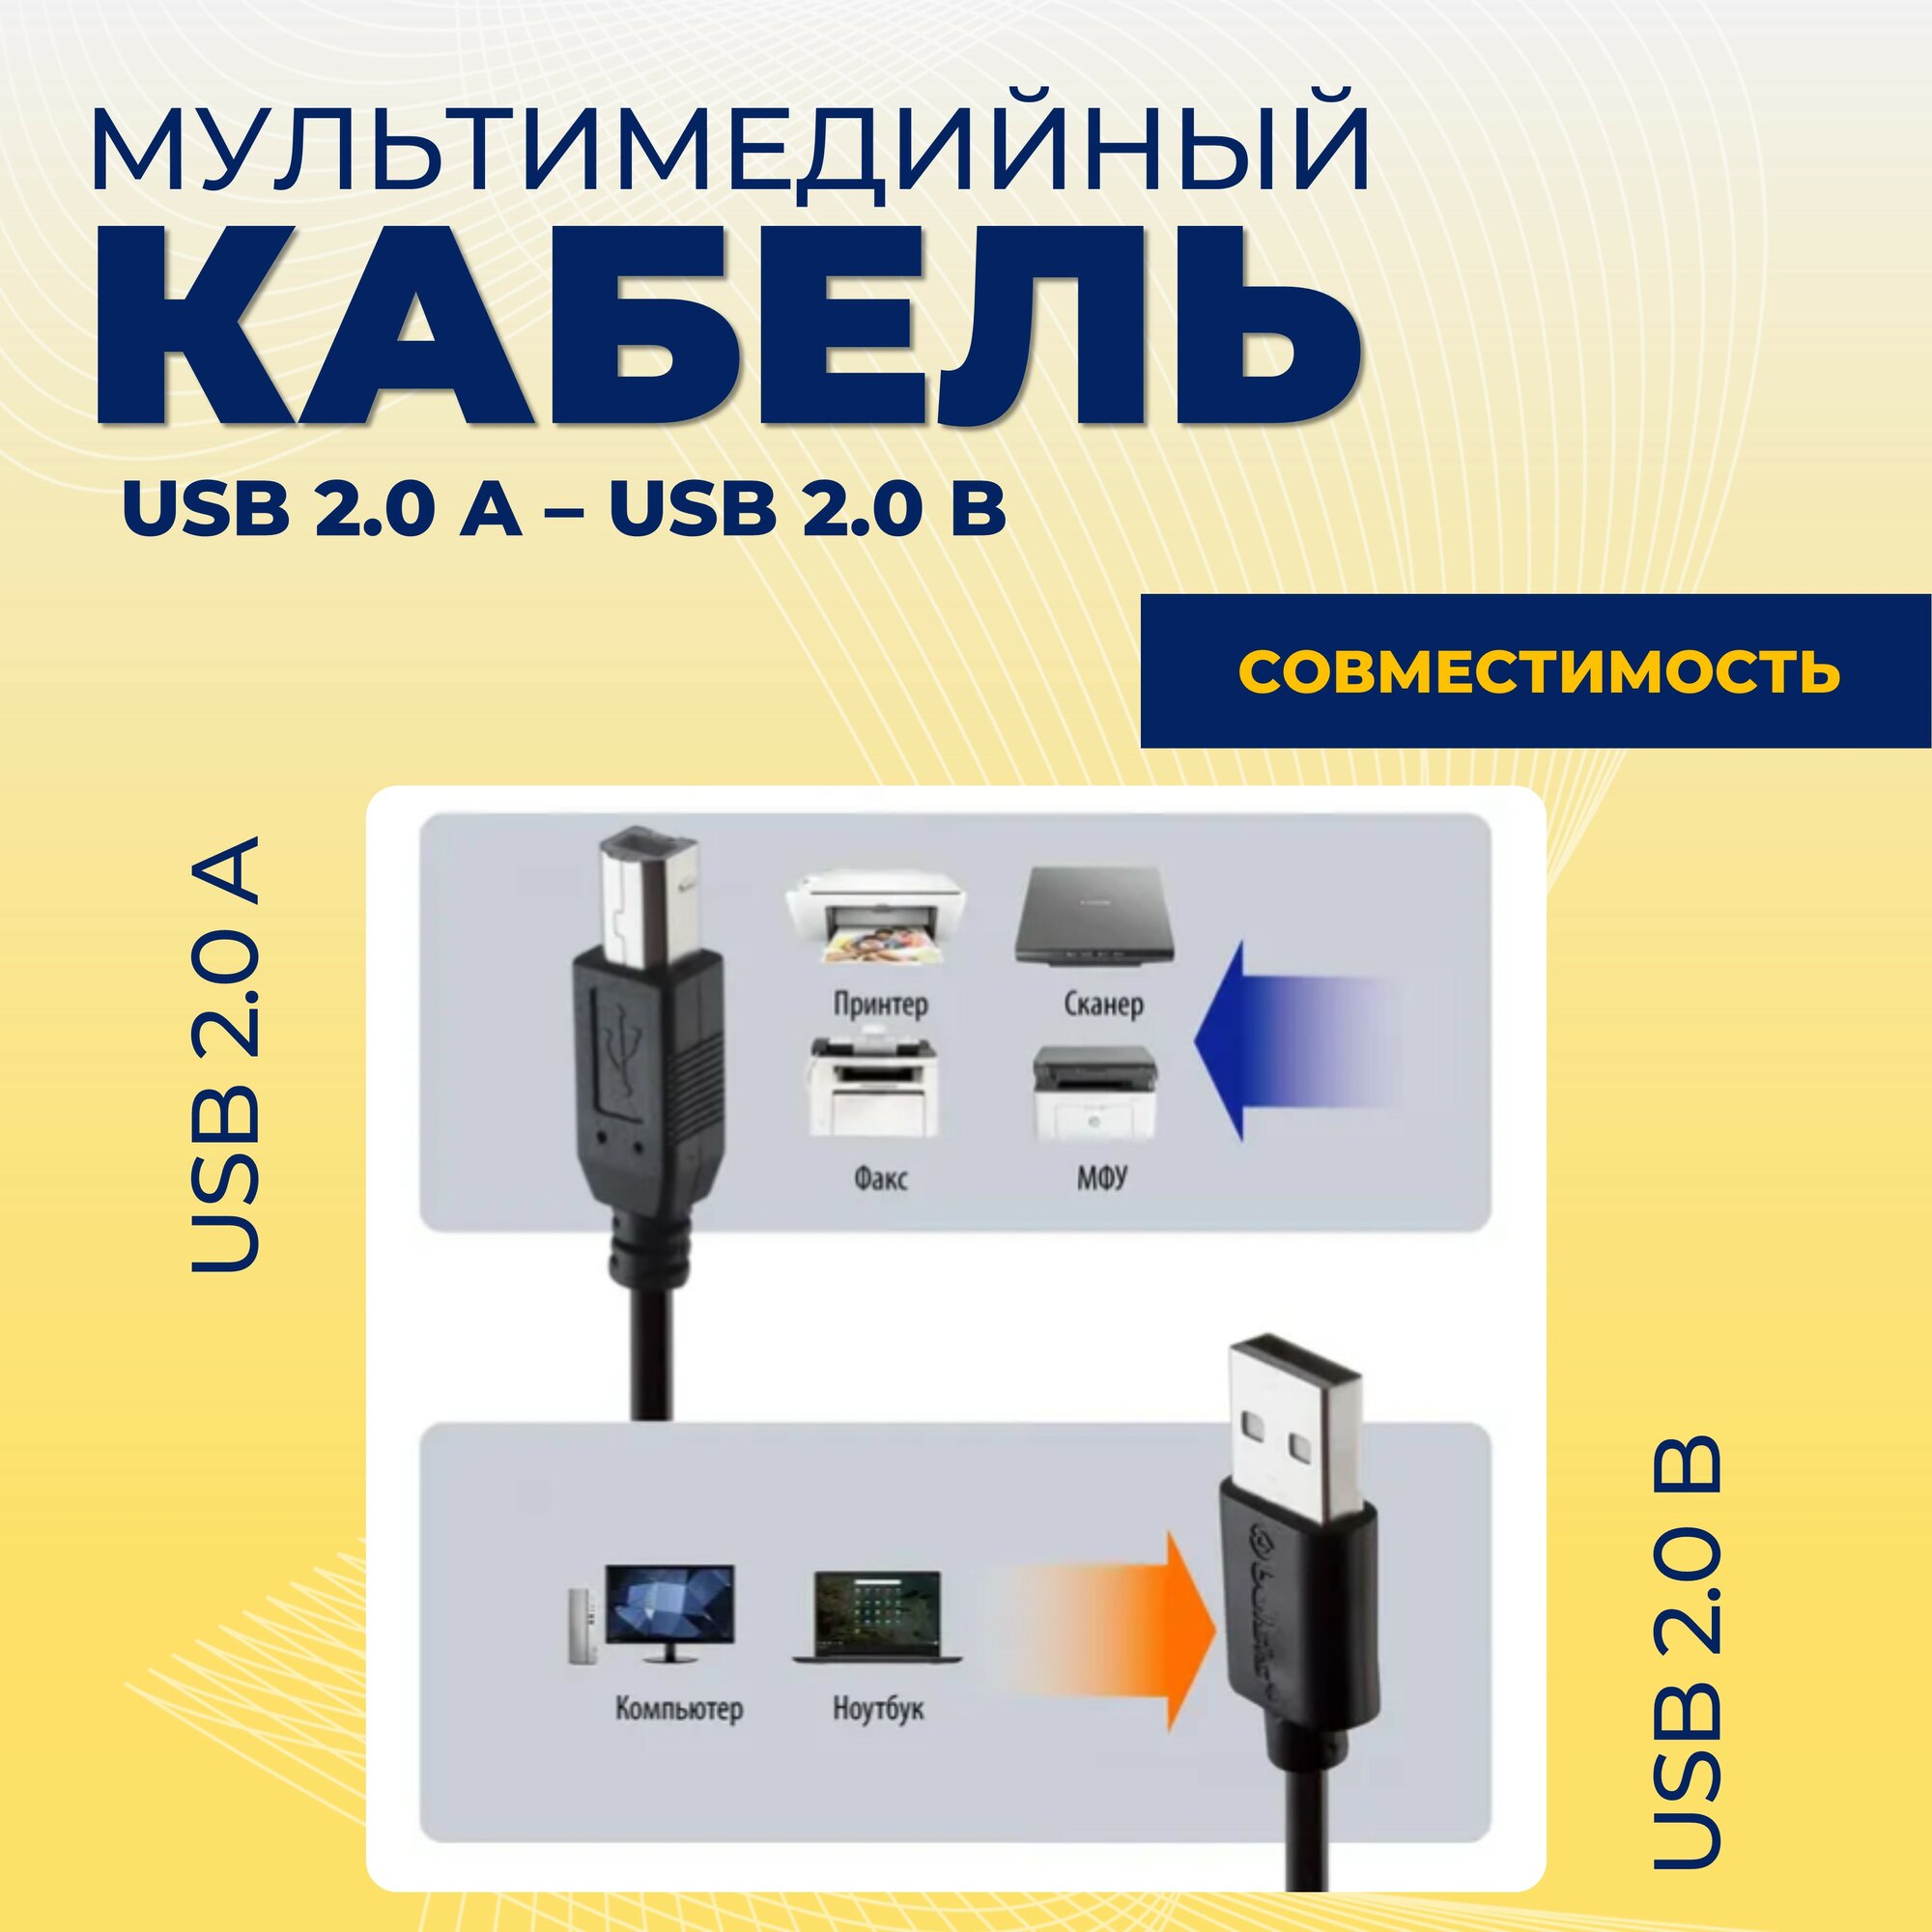 Кабель для подключения принтера USB 2.0, 5 м (A штекер - B штекер), МФУ, сканера, оргтехники и других периферийных устройств, 5 метров